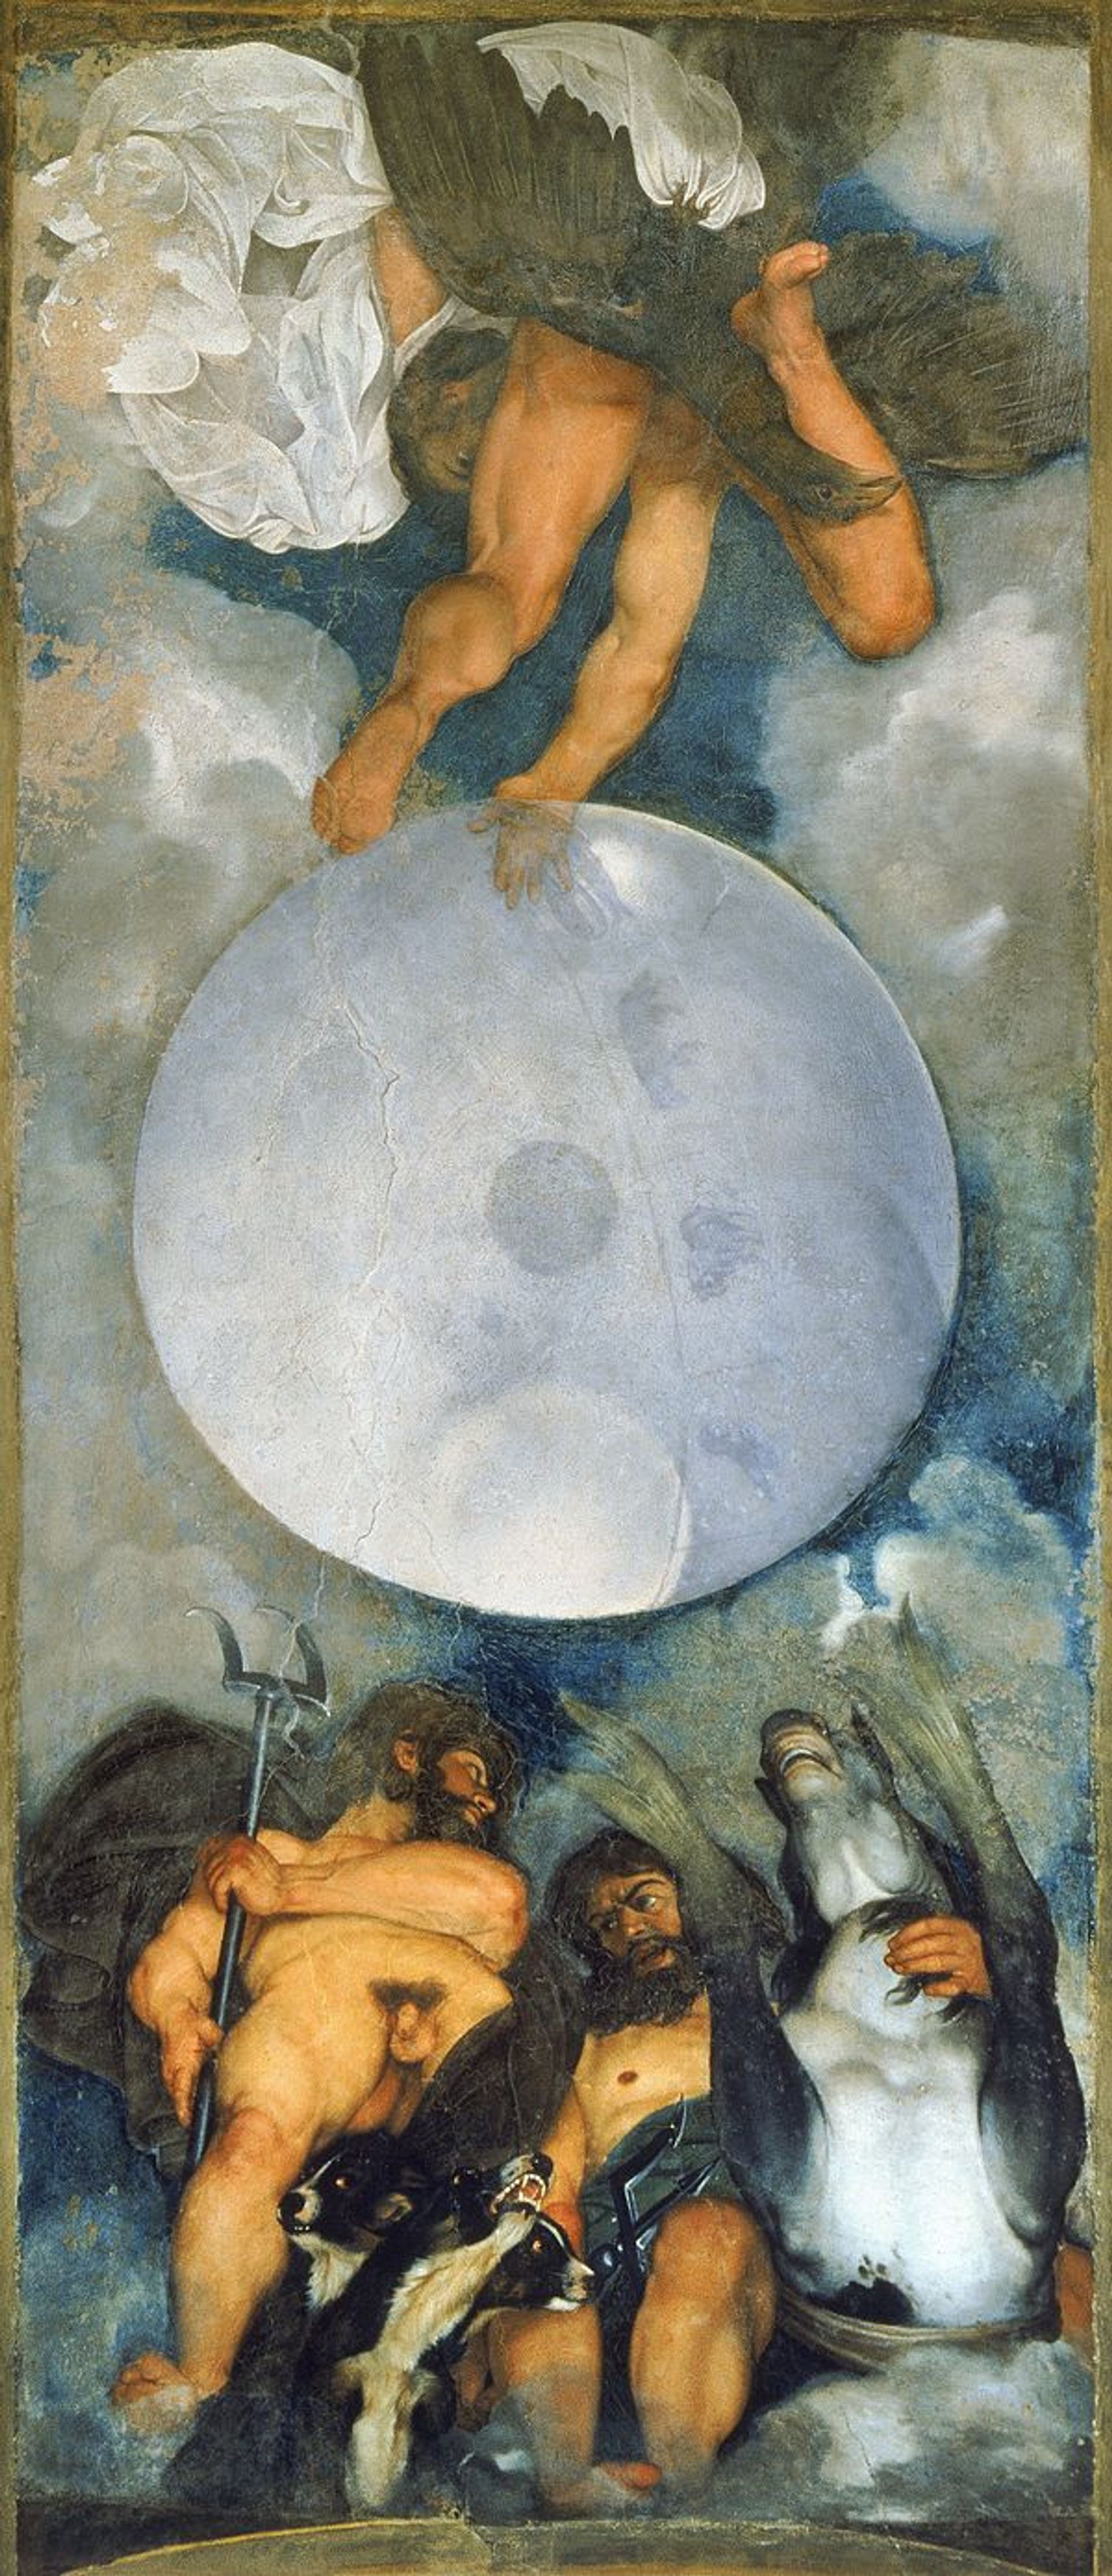 יופיטר, נפטון ופלוטו. צויר על ידי קאראווג'יו בסביבות 1597